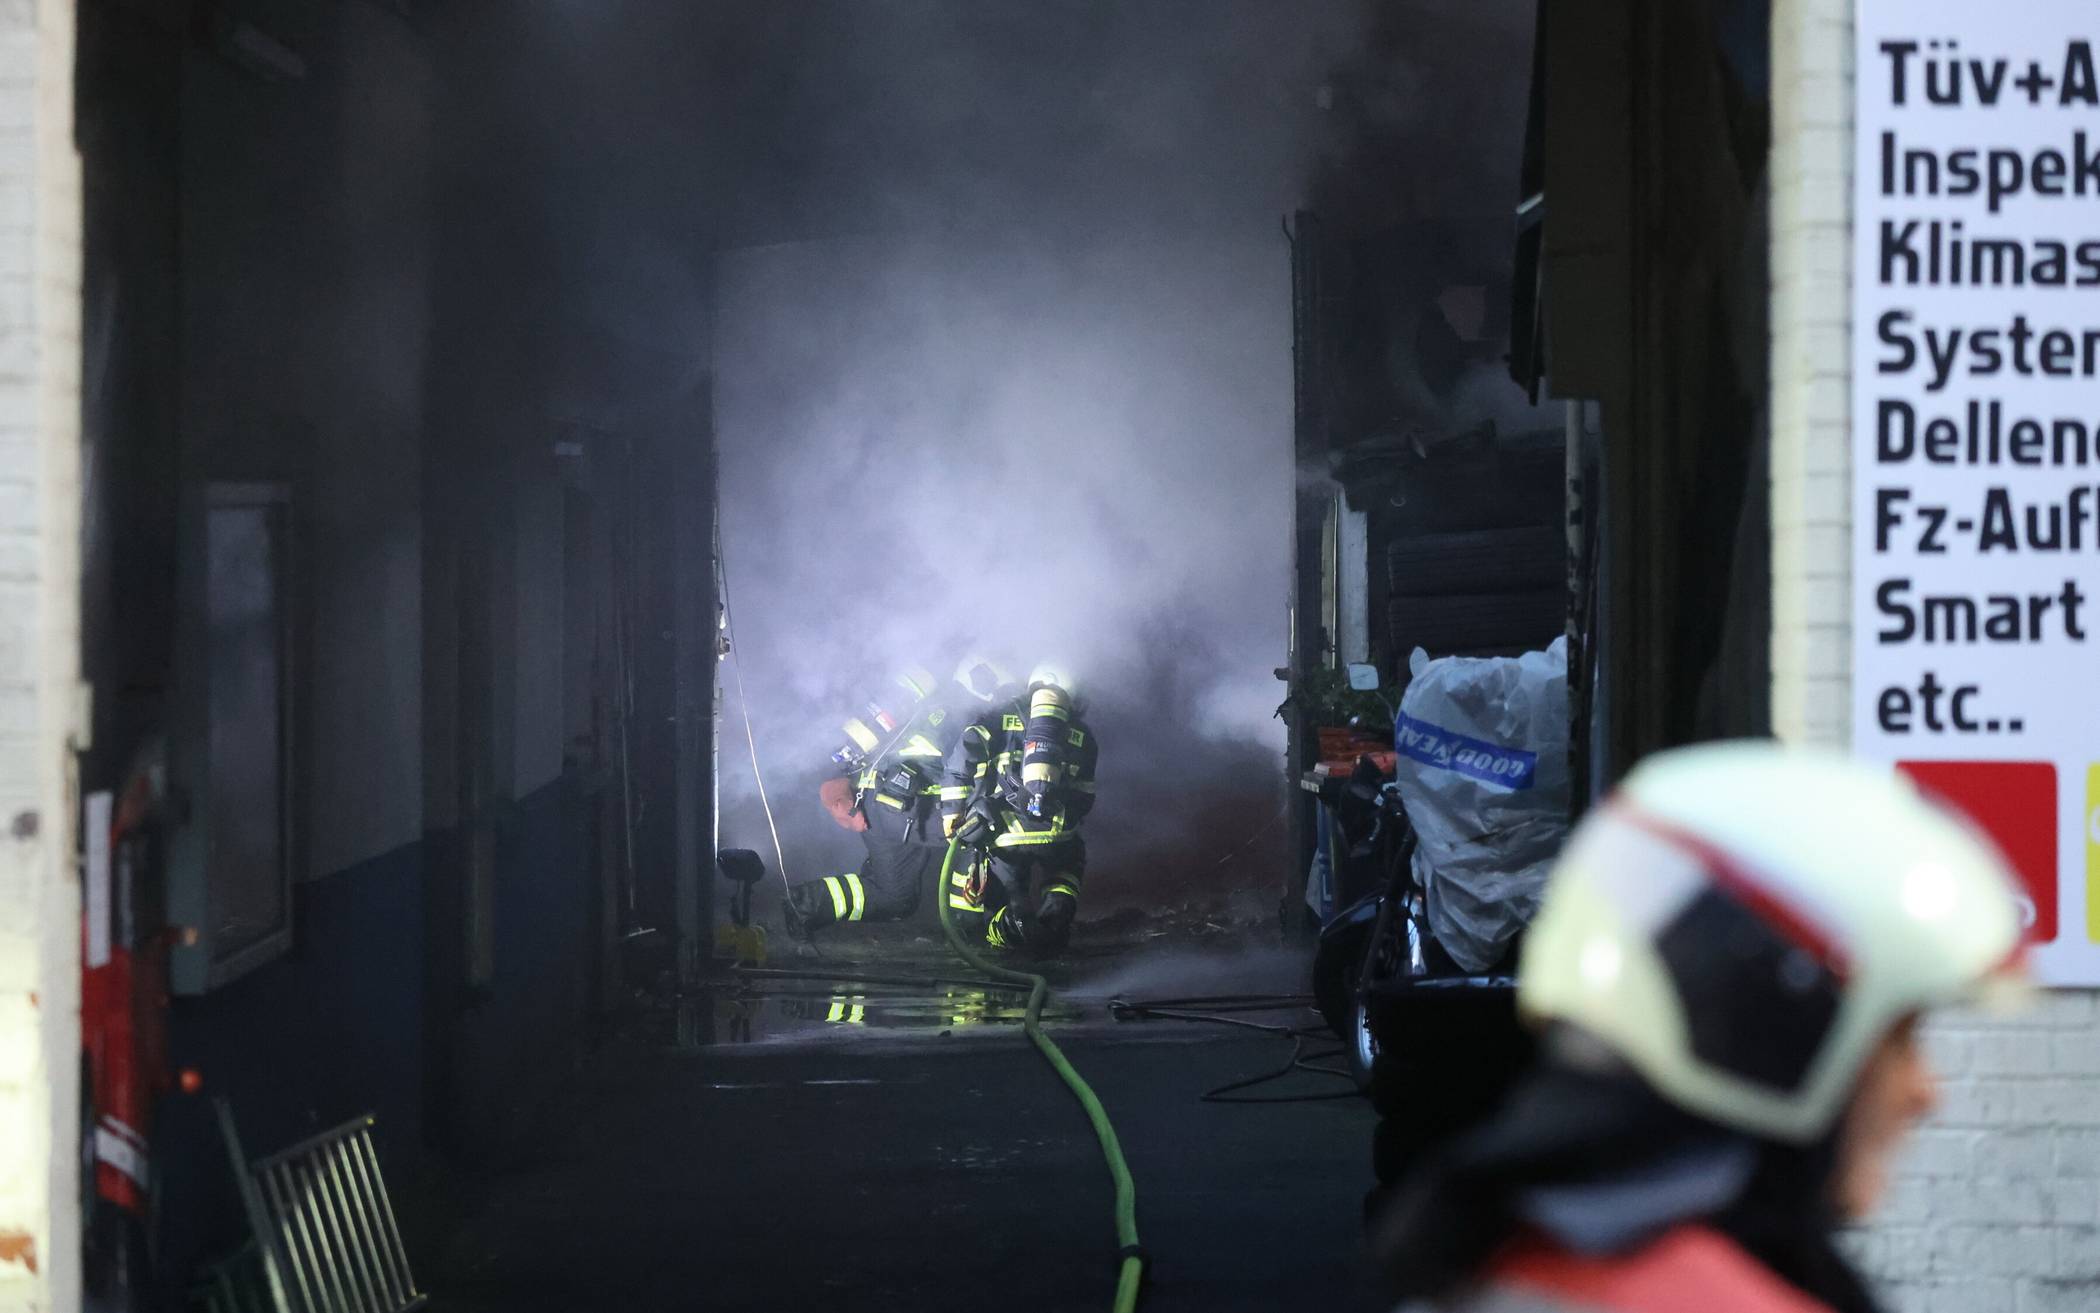 Großeinsatz wegen Brand in Kfz-Werkstatt